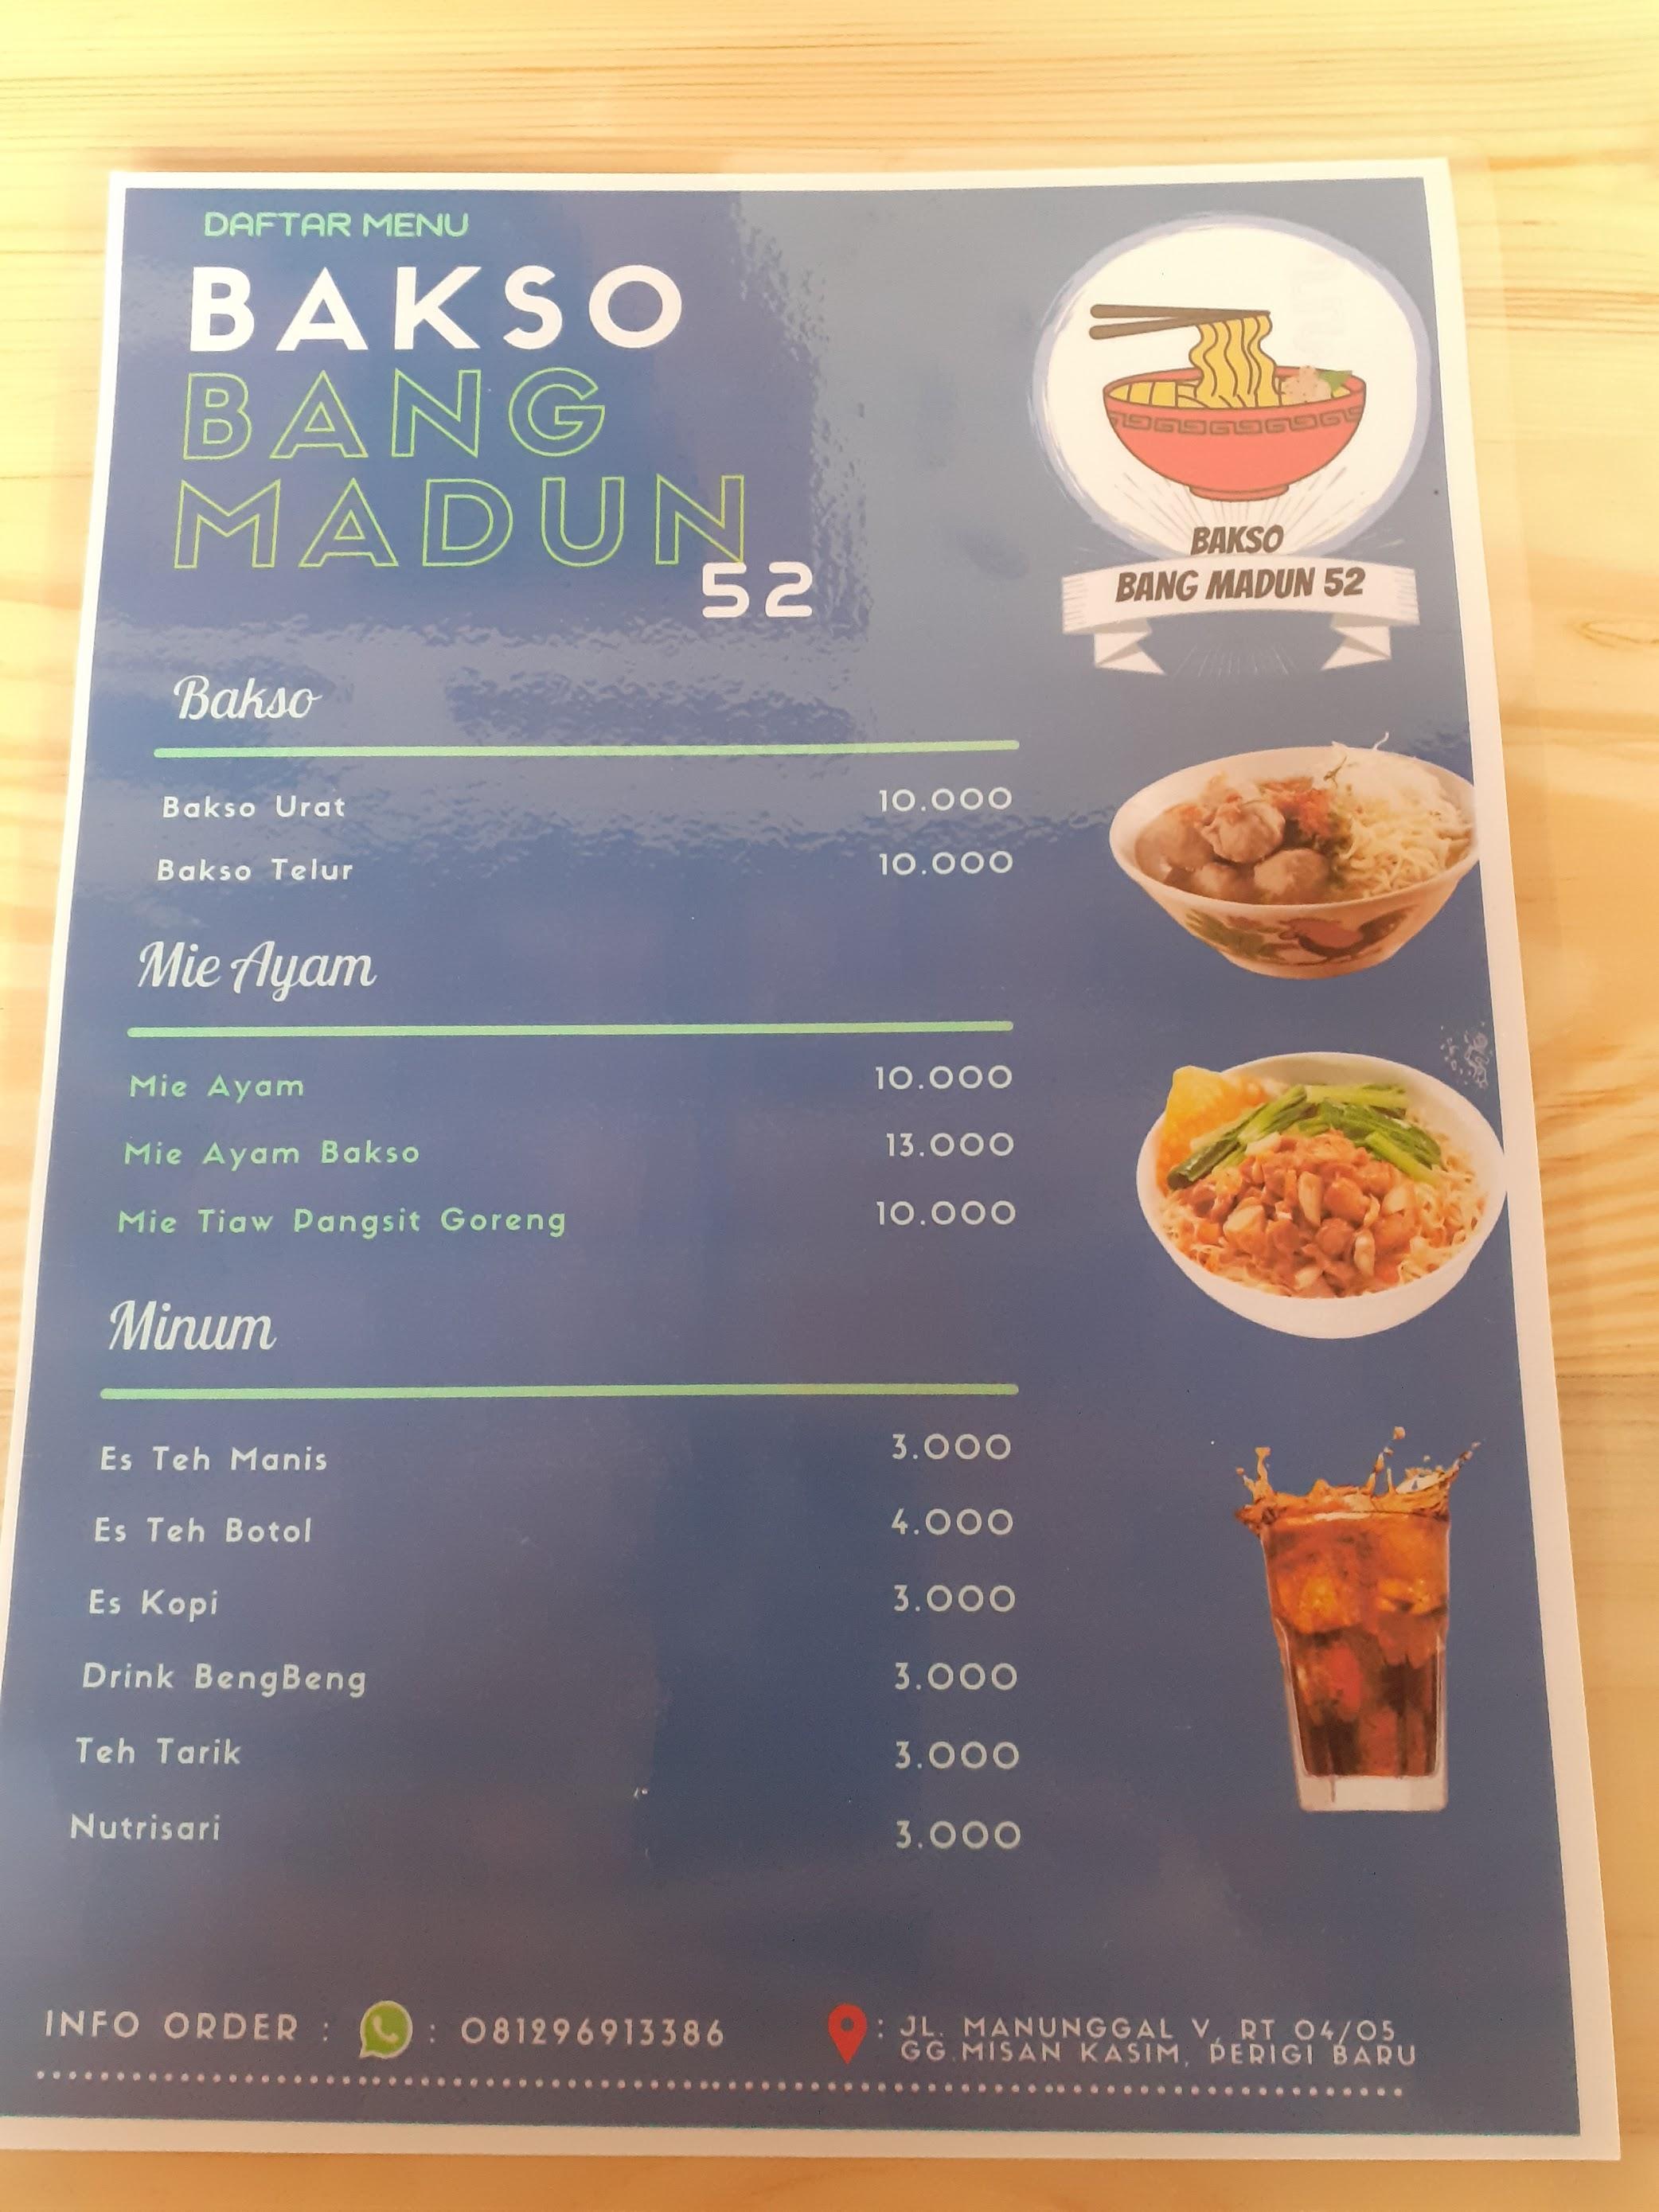 Bakso Bang Madun 52 review